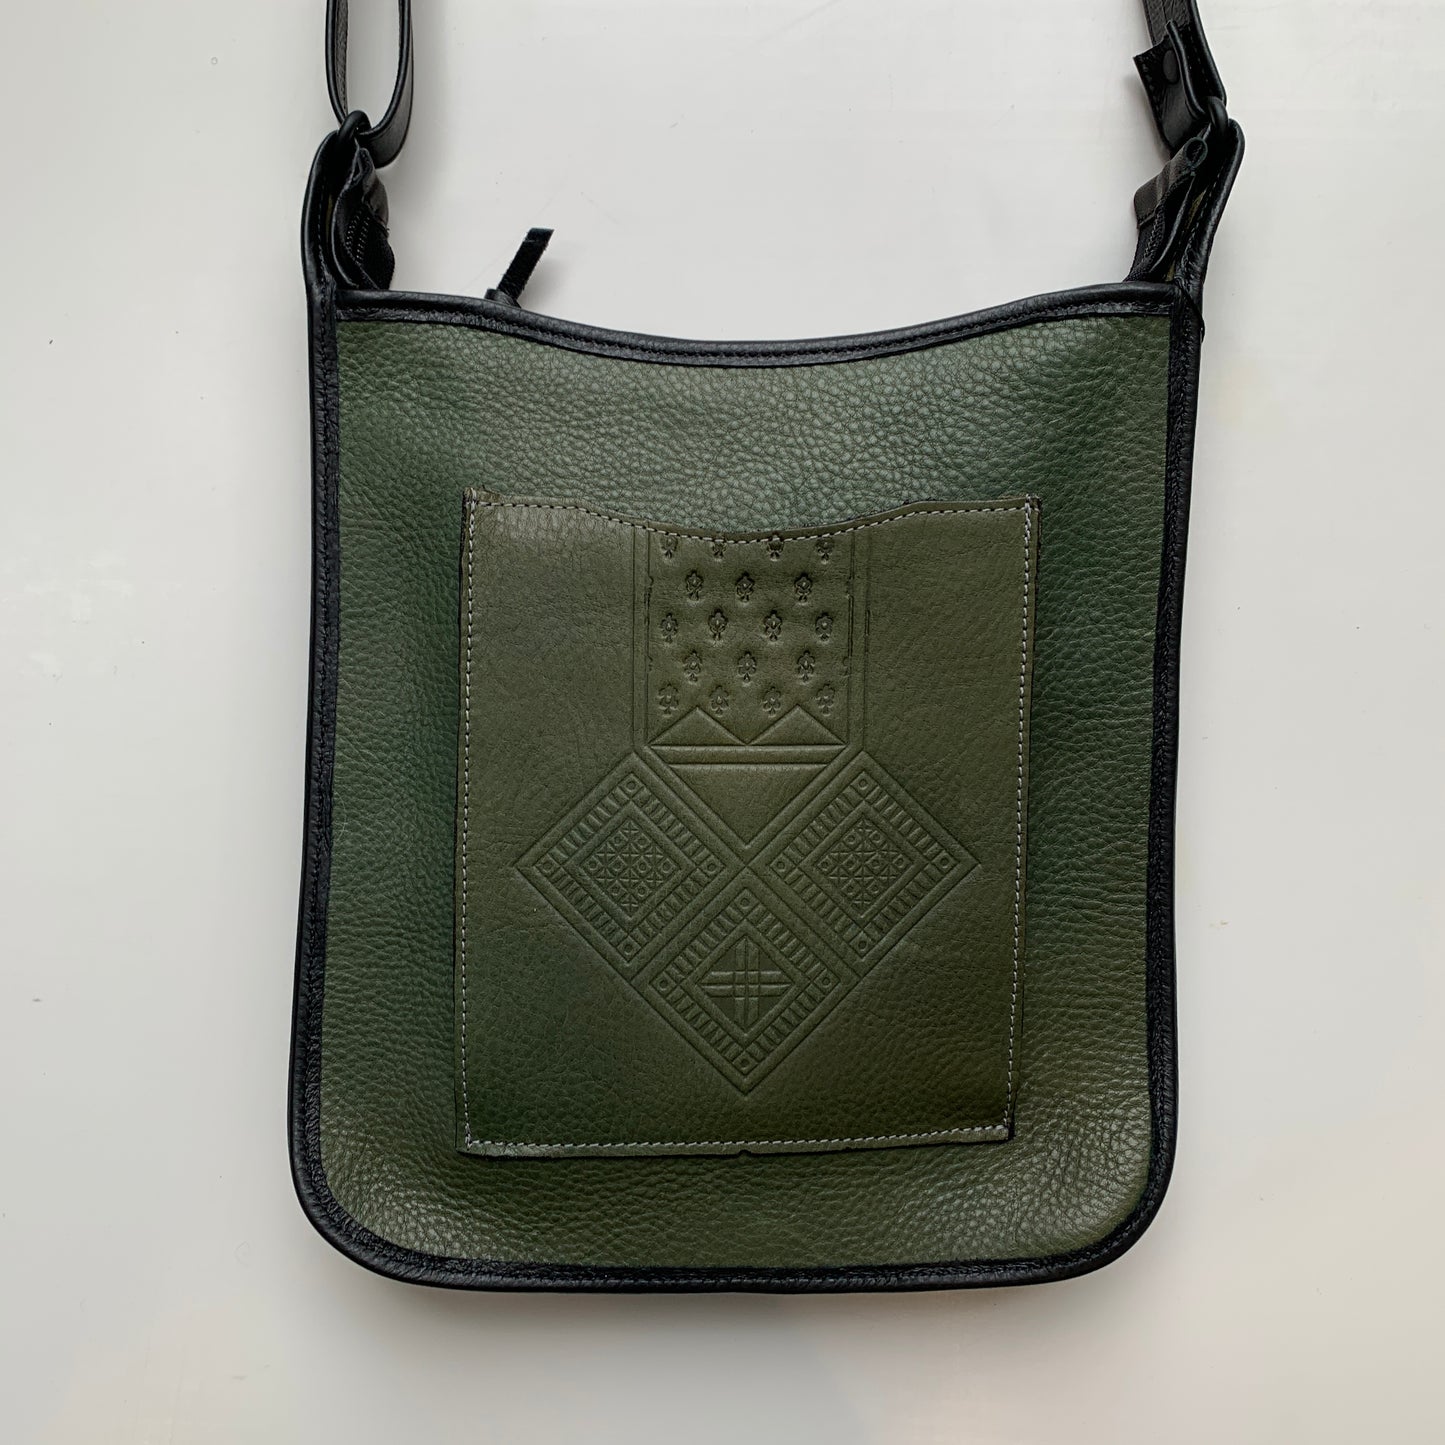 Green AZtec bag